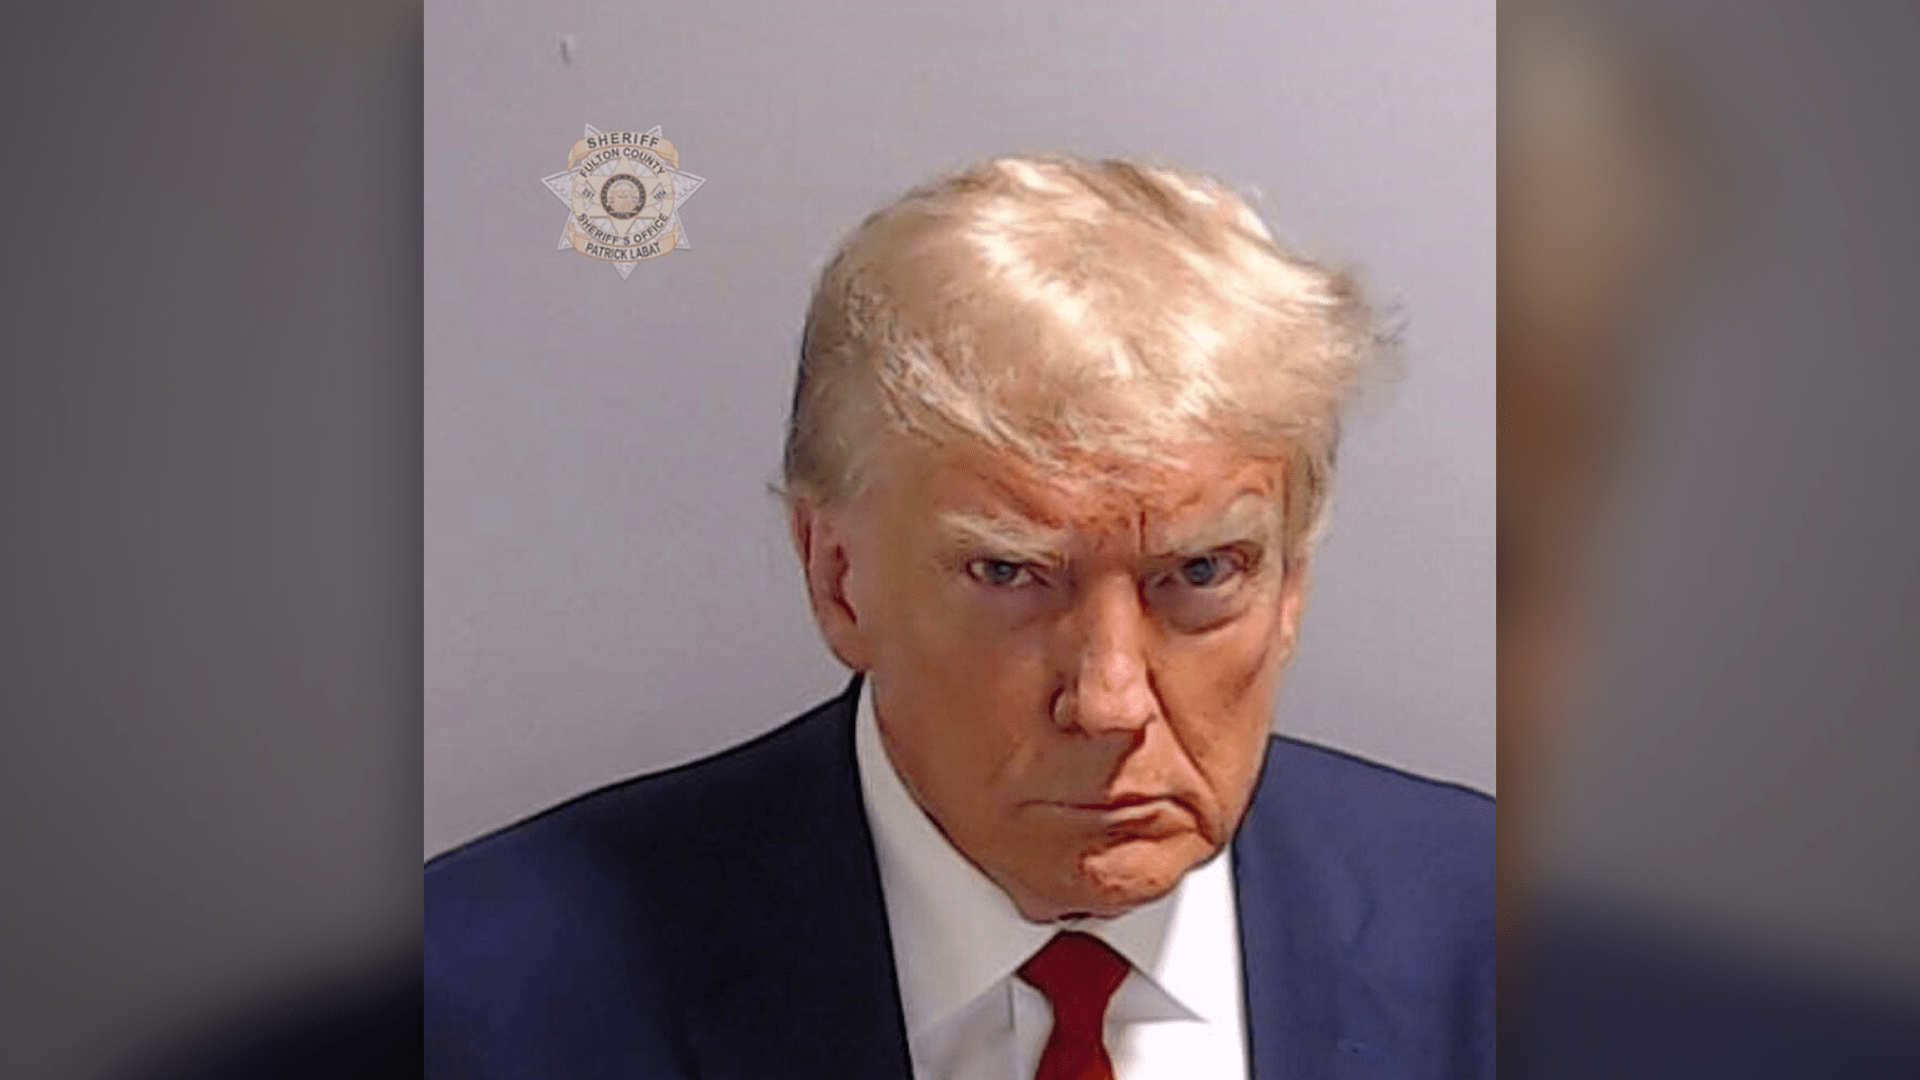 Donald Trump je prvním zatčeným prezidentem USA v historii.